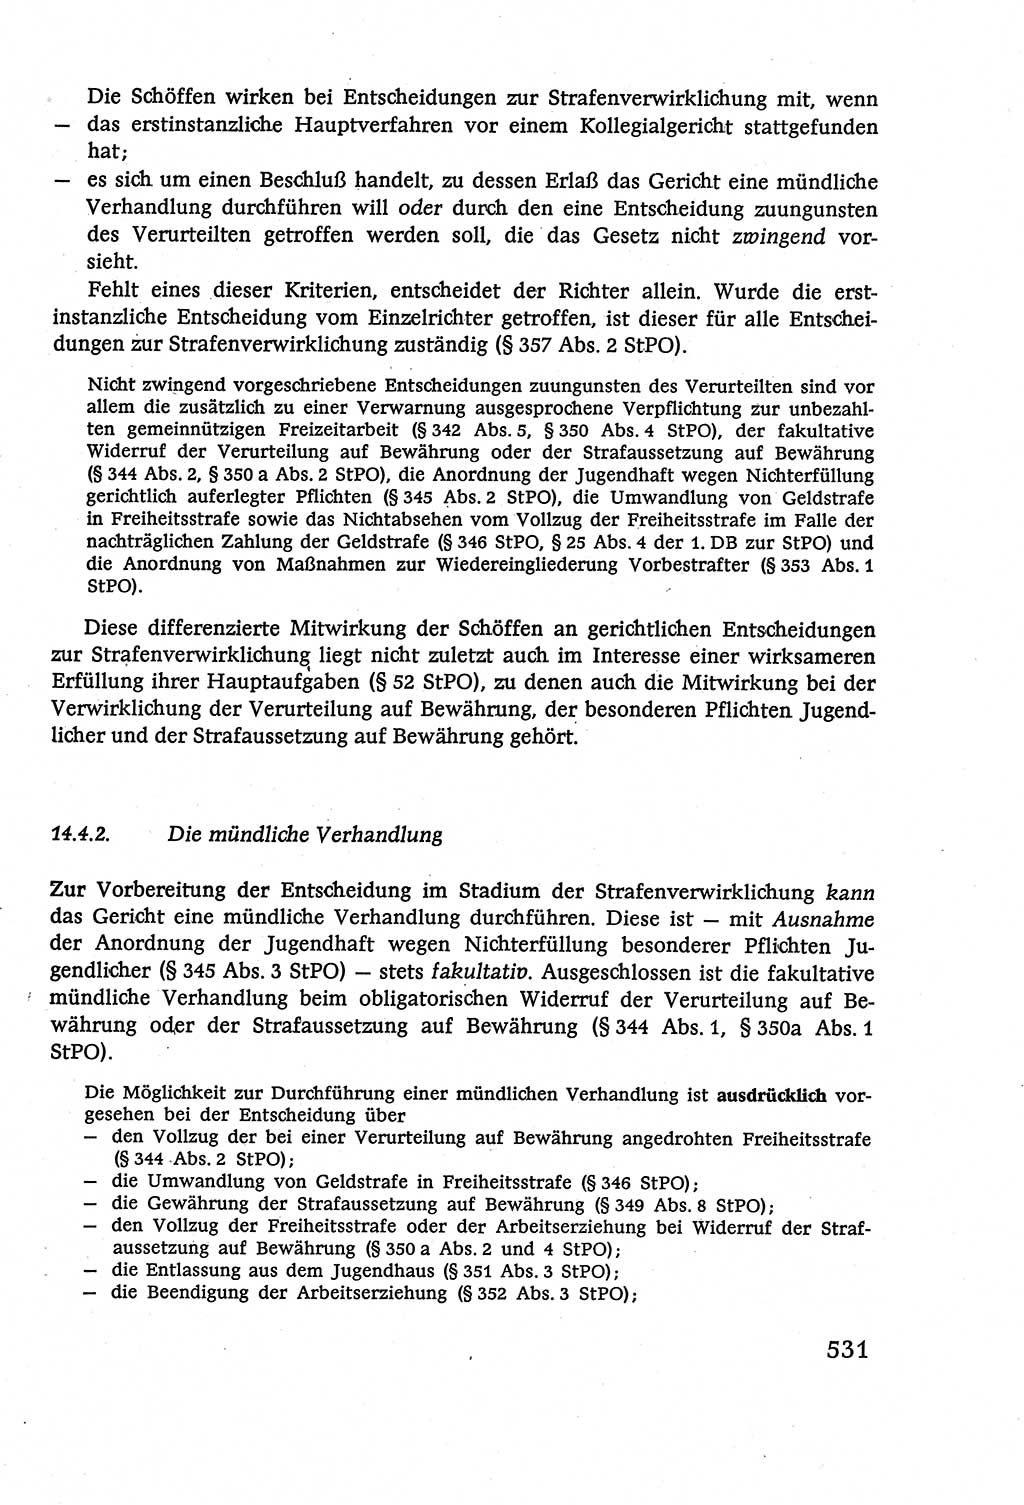 Strafverfahrensrecht [Deutsche Demokratische Republik (DDR)], Lehrbuch 1977, Seite 531 (Strafverf.-R. DDR Lb. 1977, S. 531)